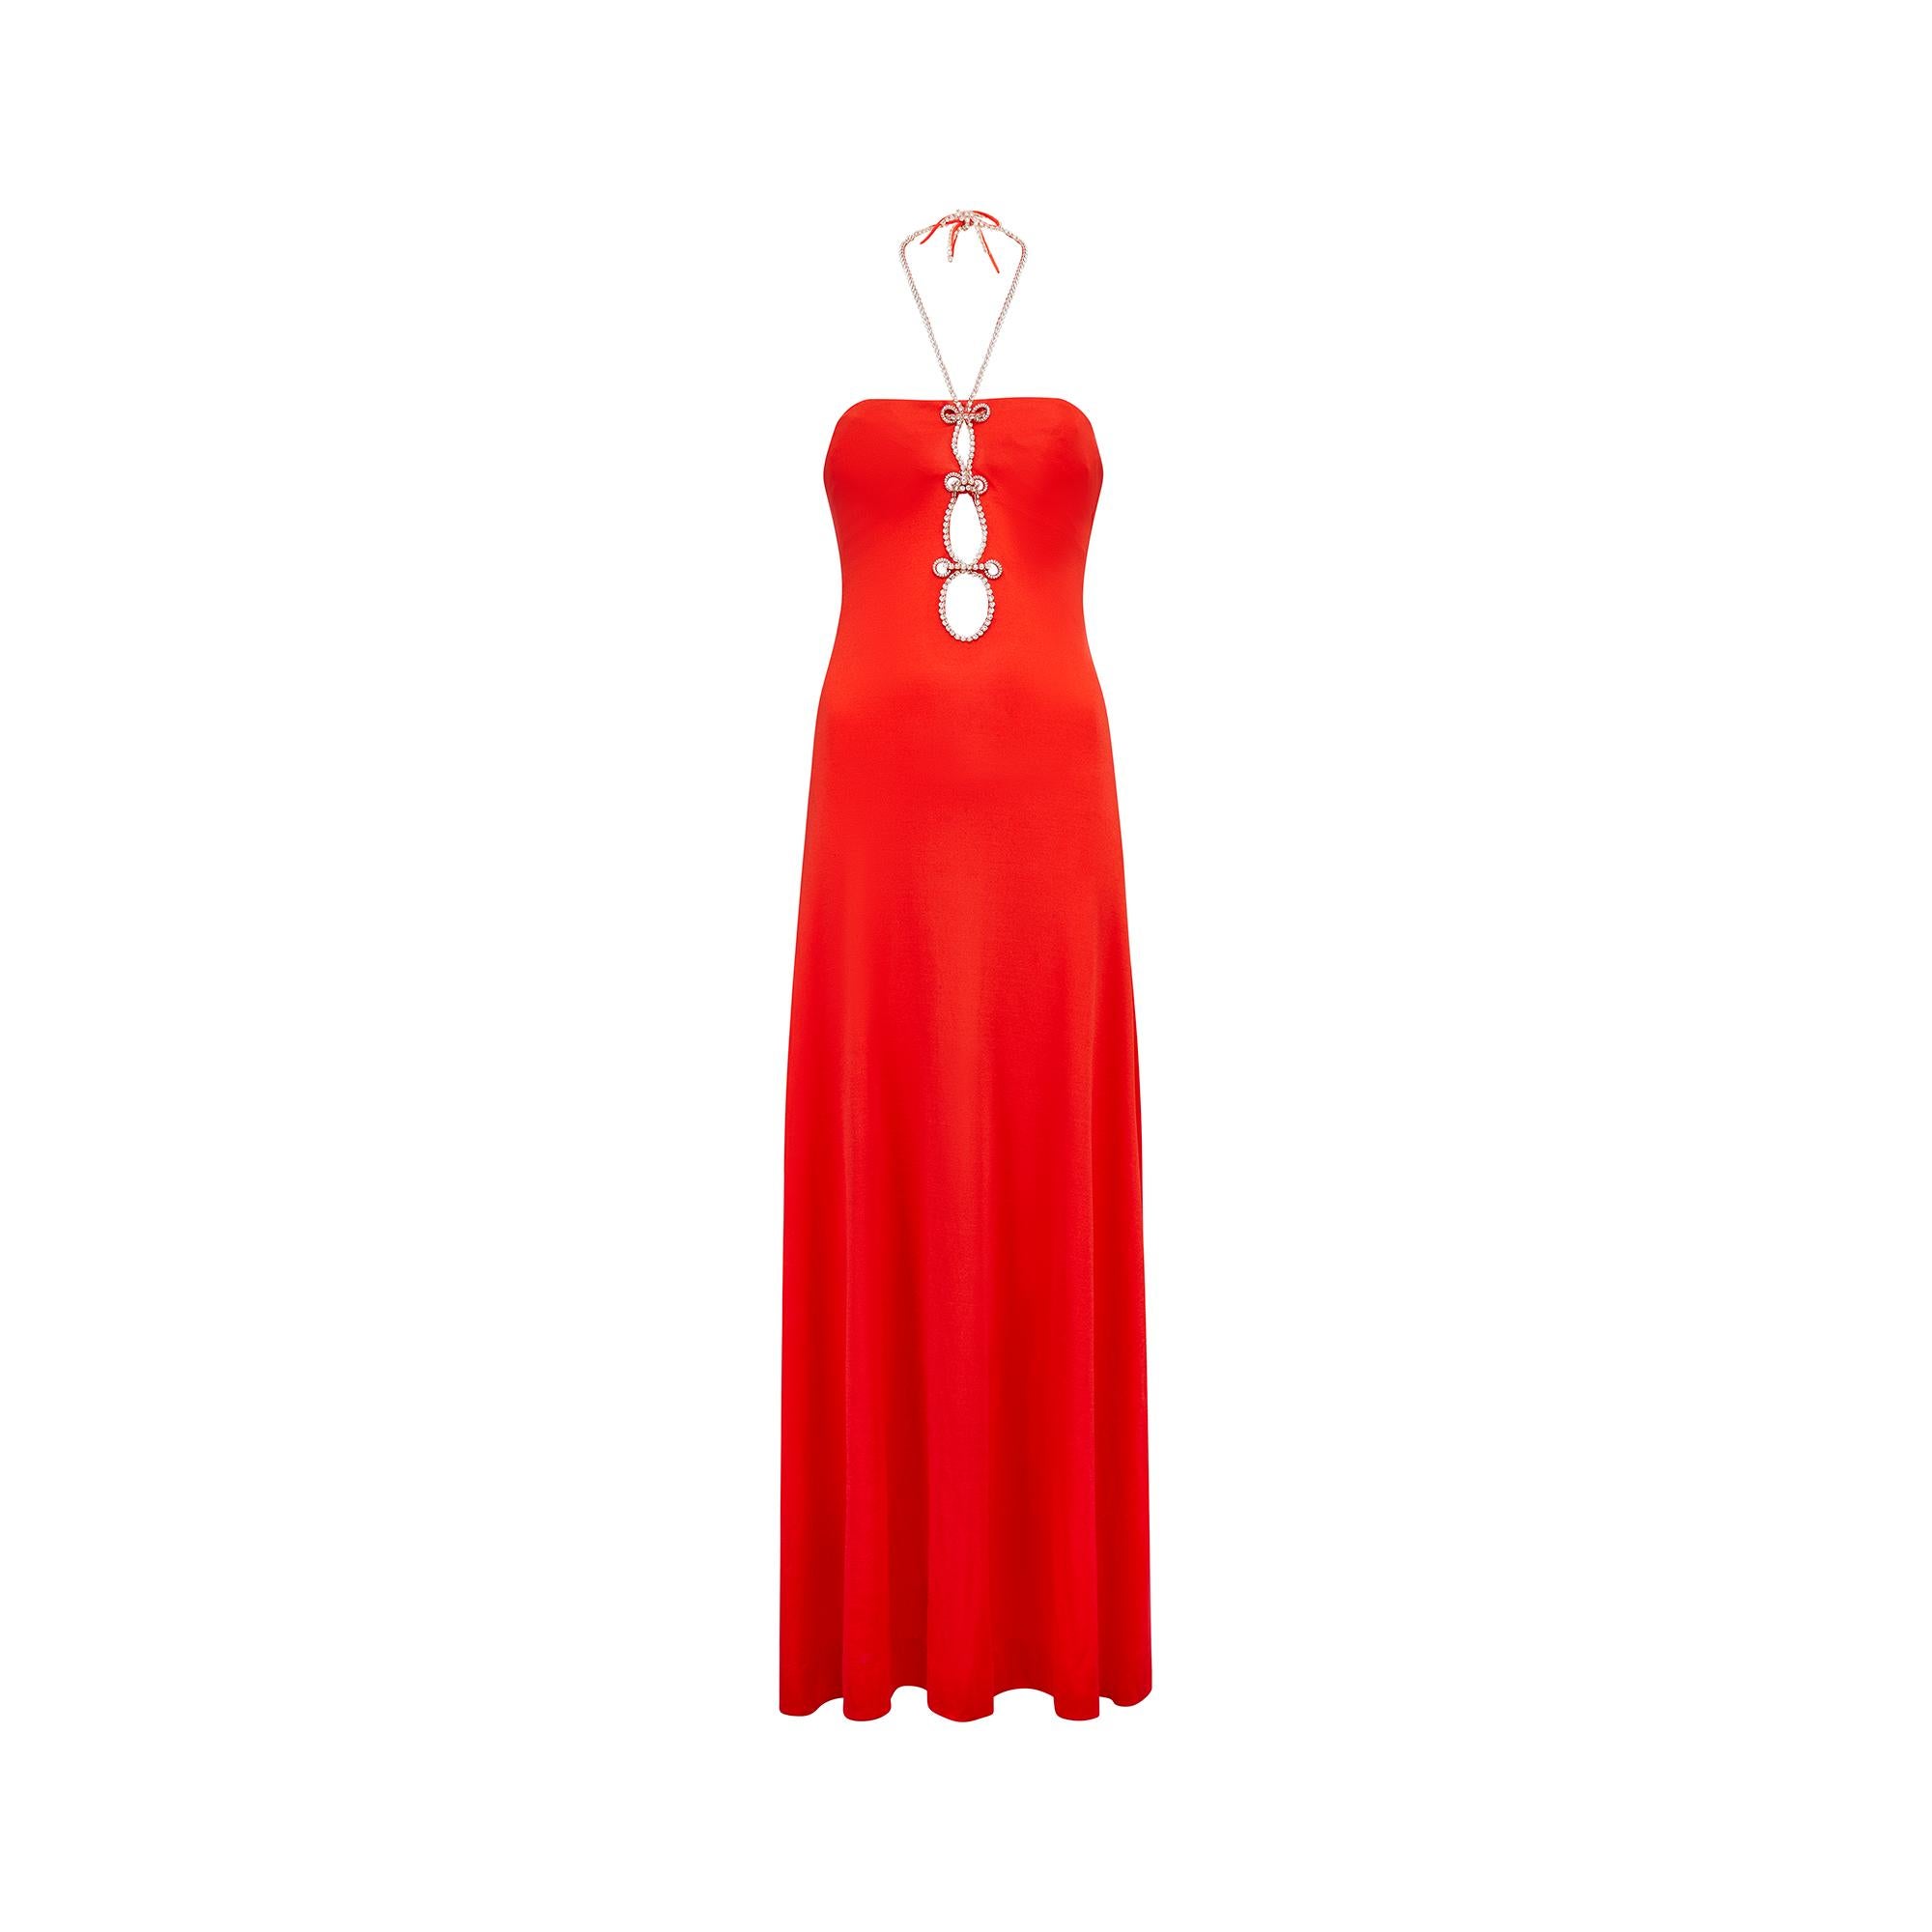 Fabuleuse robe longue en jersey rouge des années 1970, signée Loris Azzaro, présentant un profond trou de serrure sur l'encolure avant, rehaussé de cristaux diamantés pour un effet glamour. Celles-ci se poursuivent le long des bretelles du dos nu,